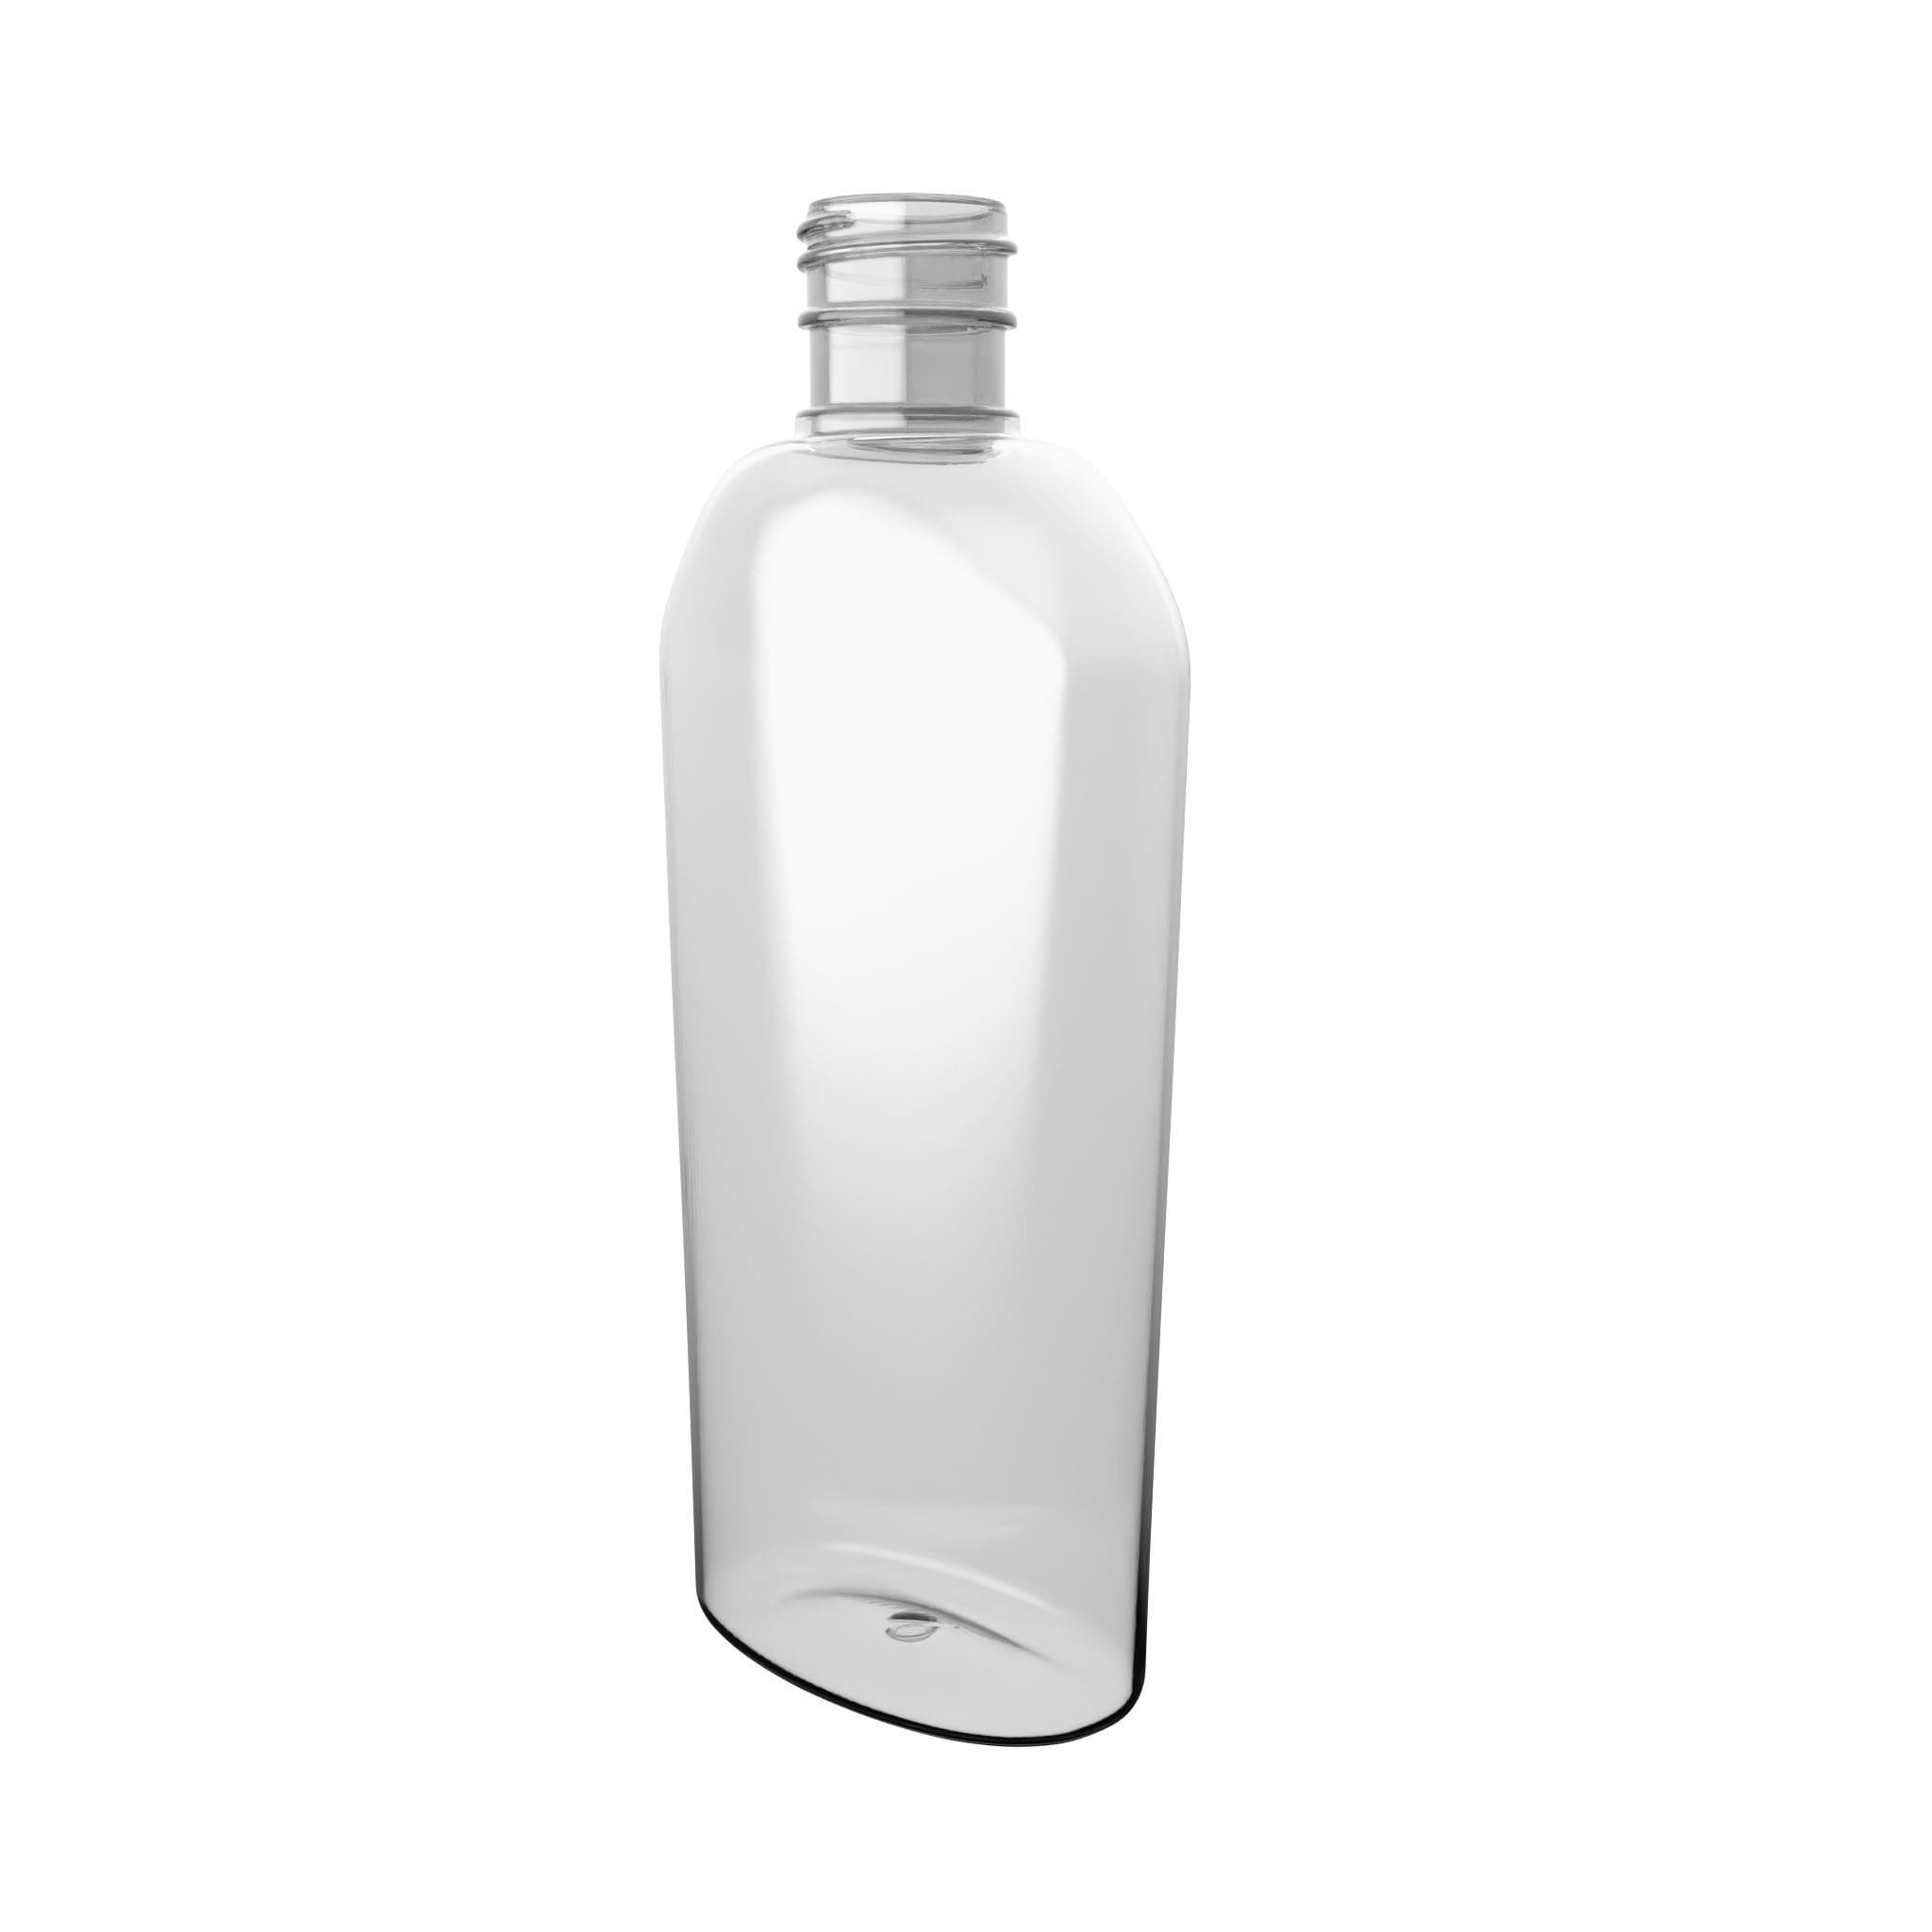 OPTIVAL PET-Flasche von EPROPLAST.